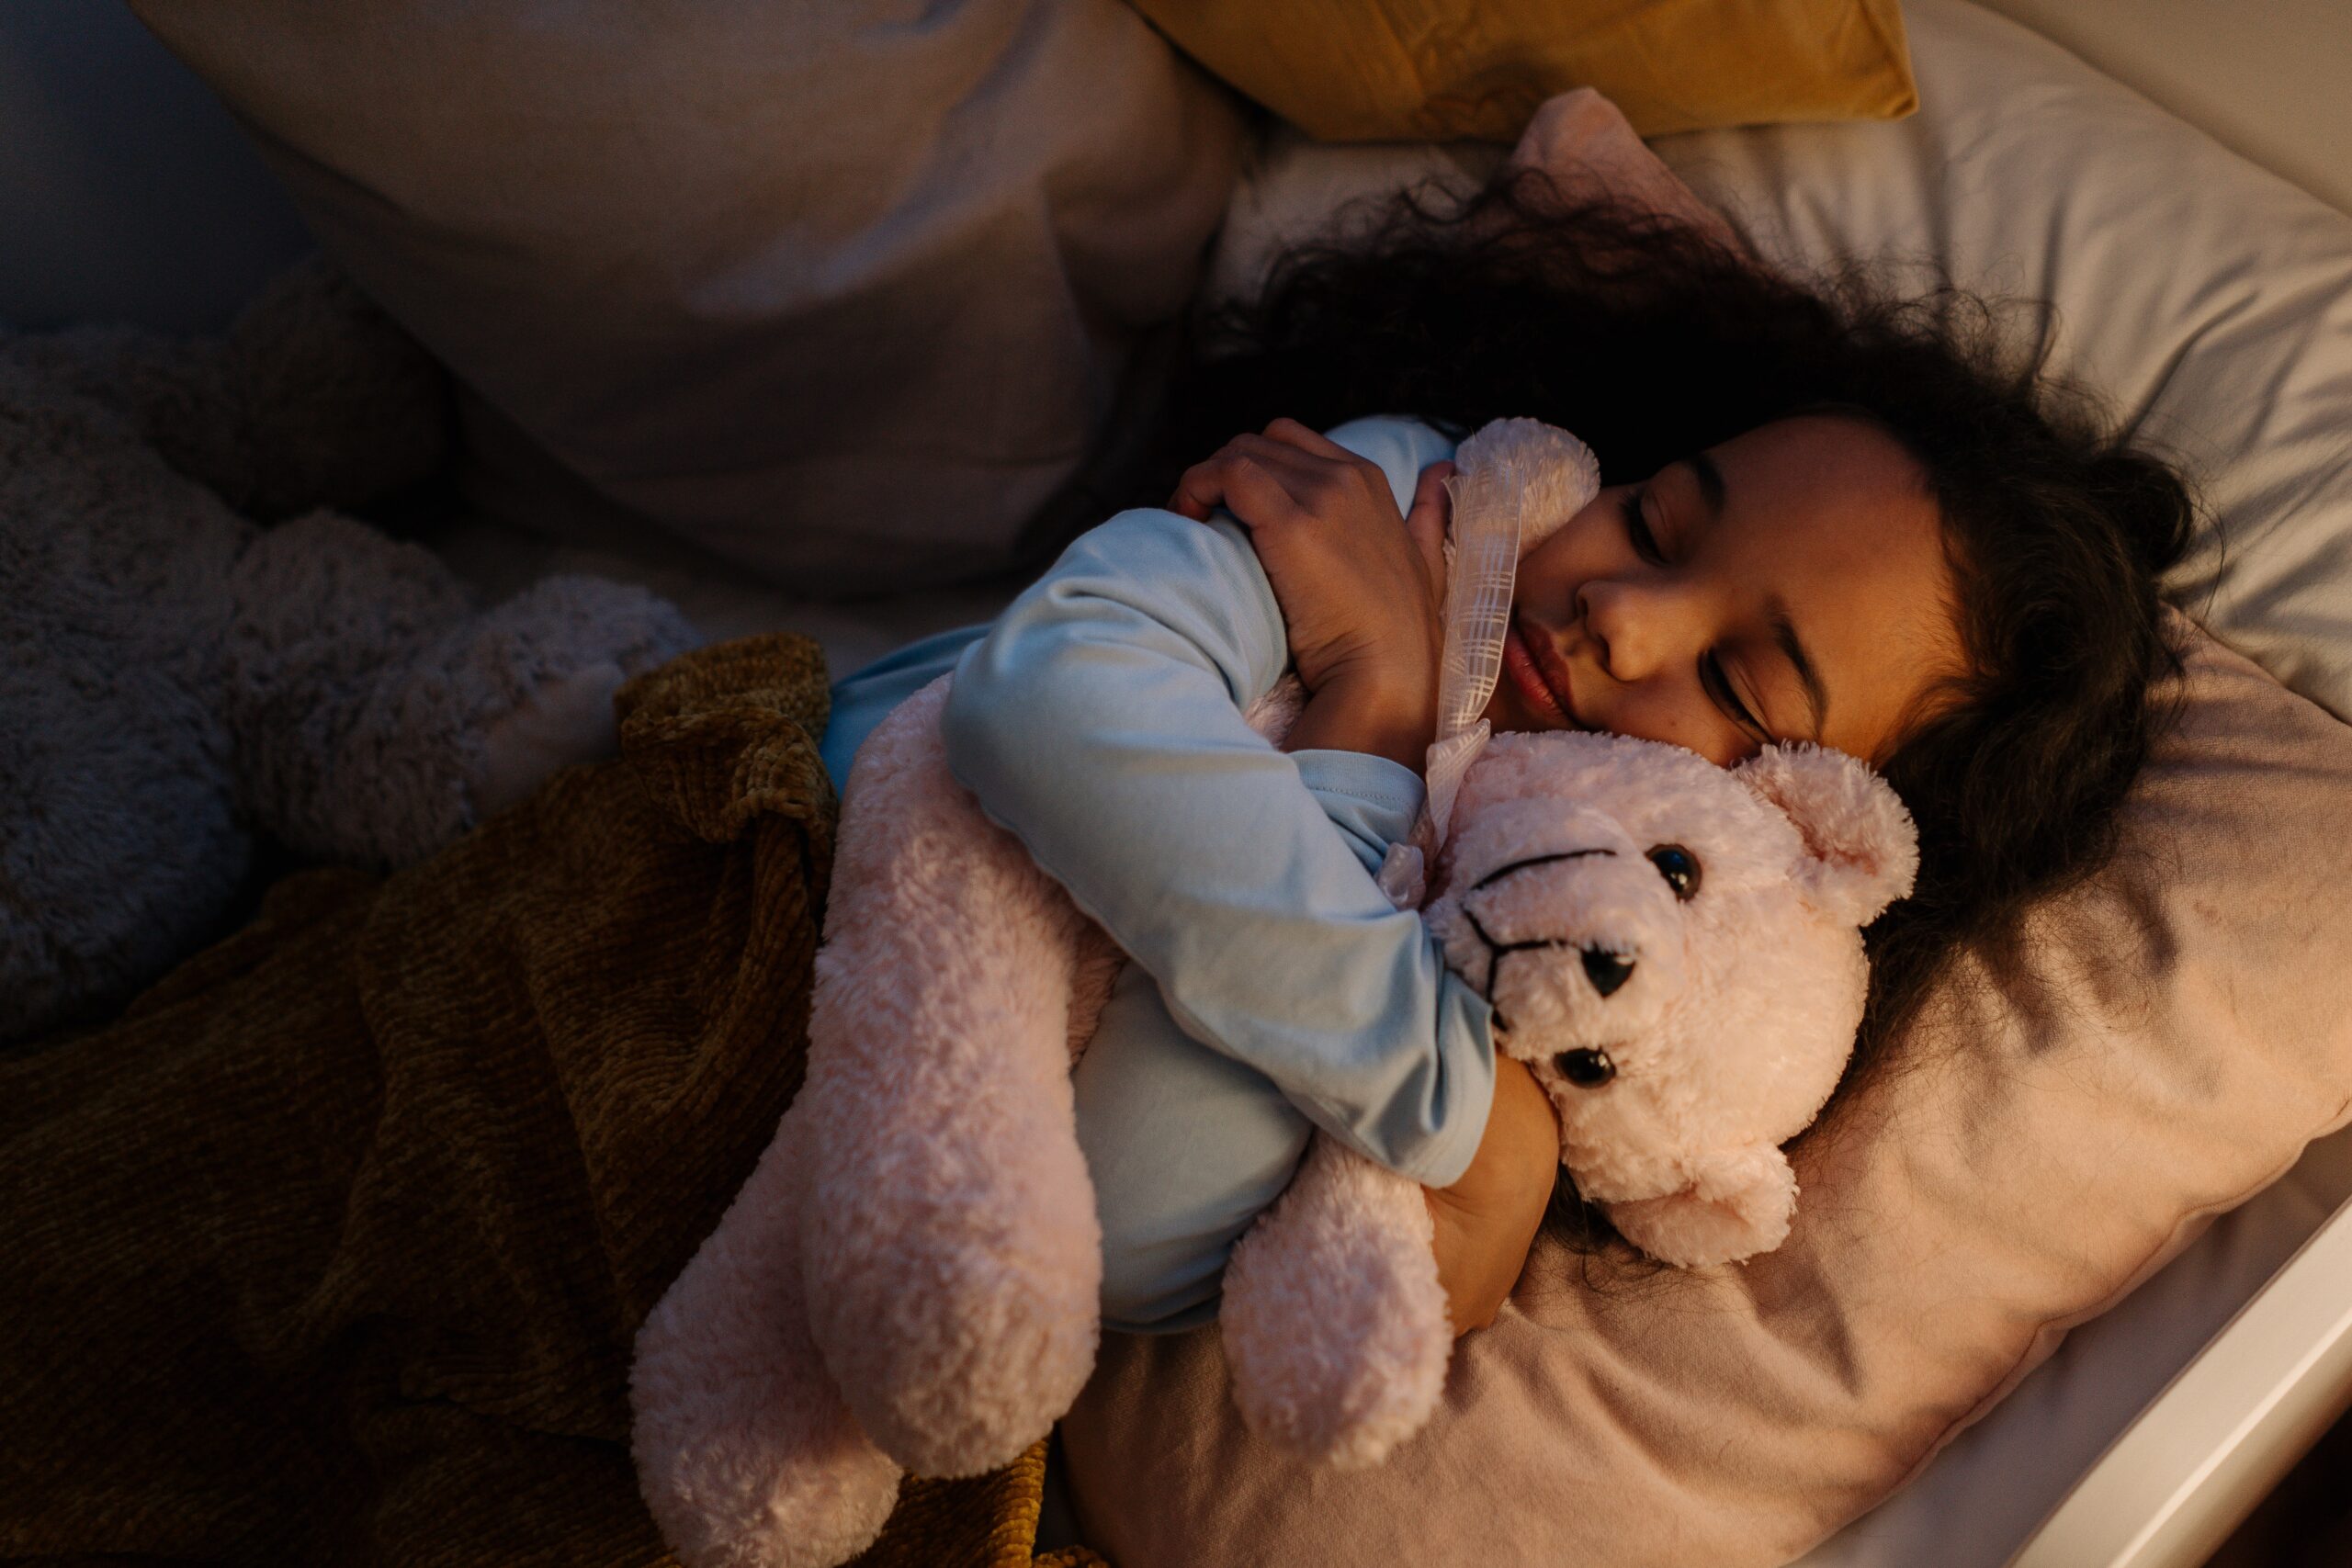 A girl asleep hugging a teddy bear.